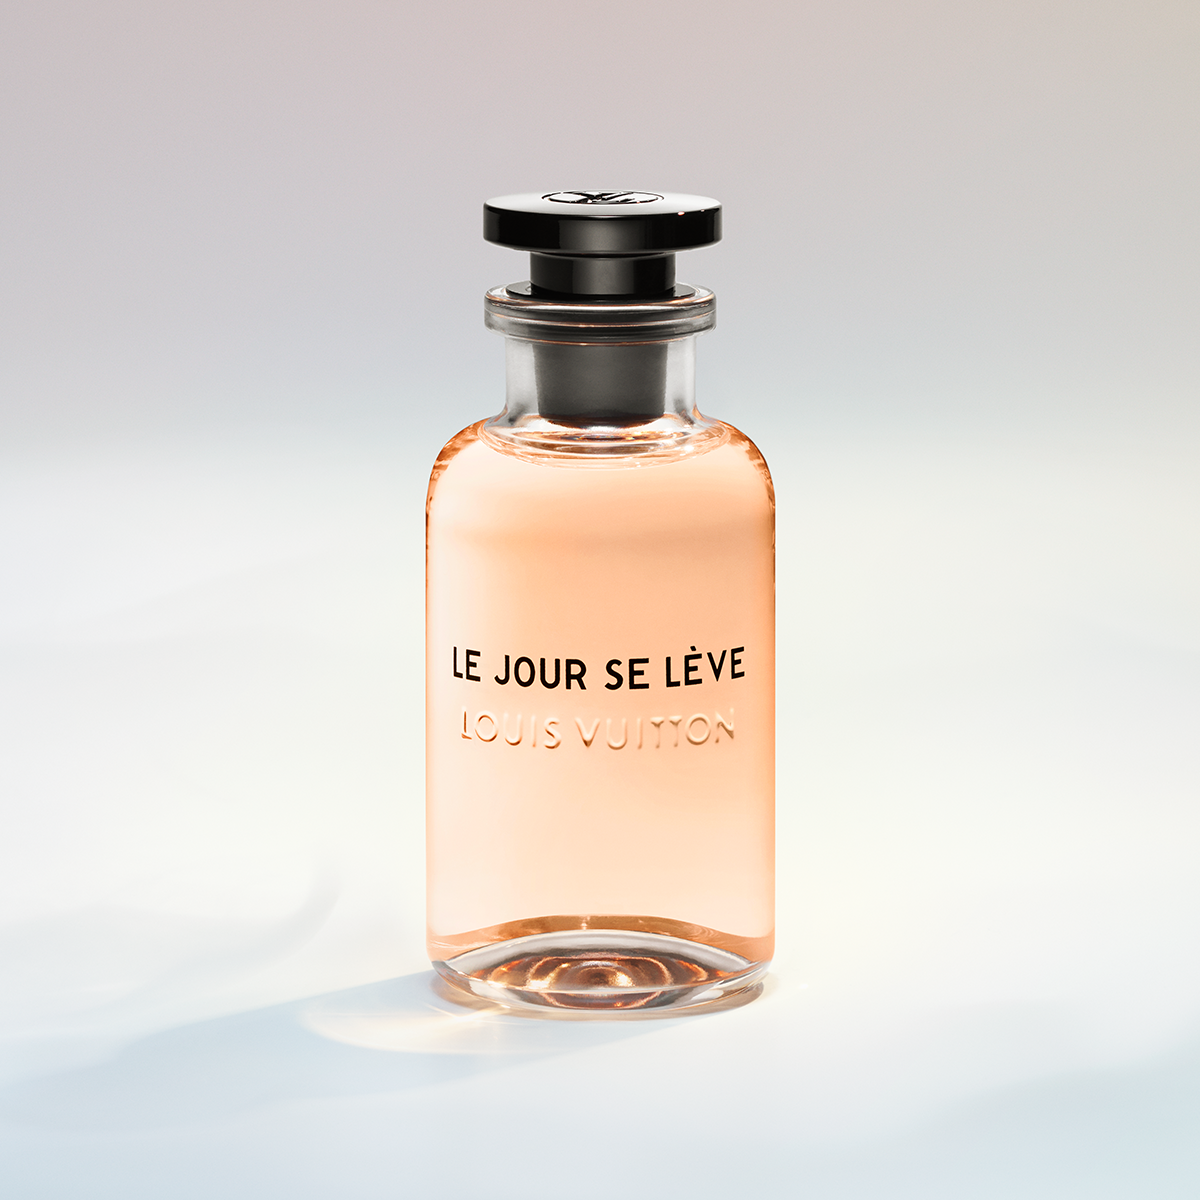 I Profumi Louis Vuitton: un viaggio olfattivo in 7 fragranze